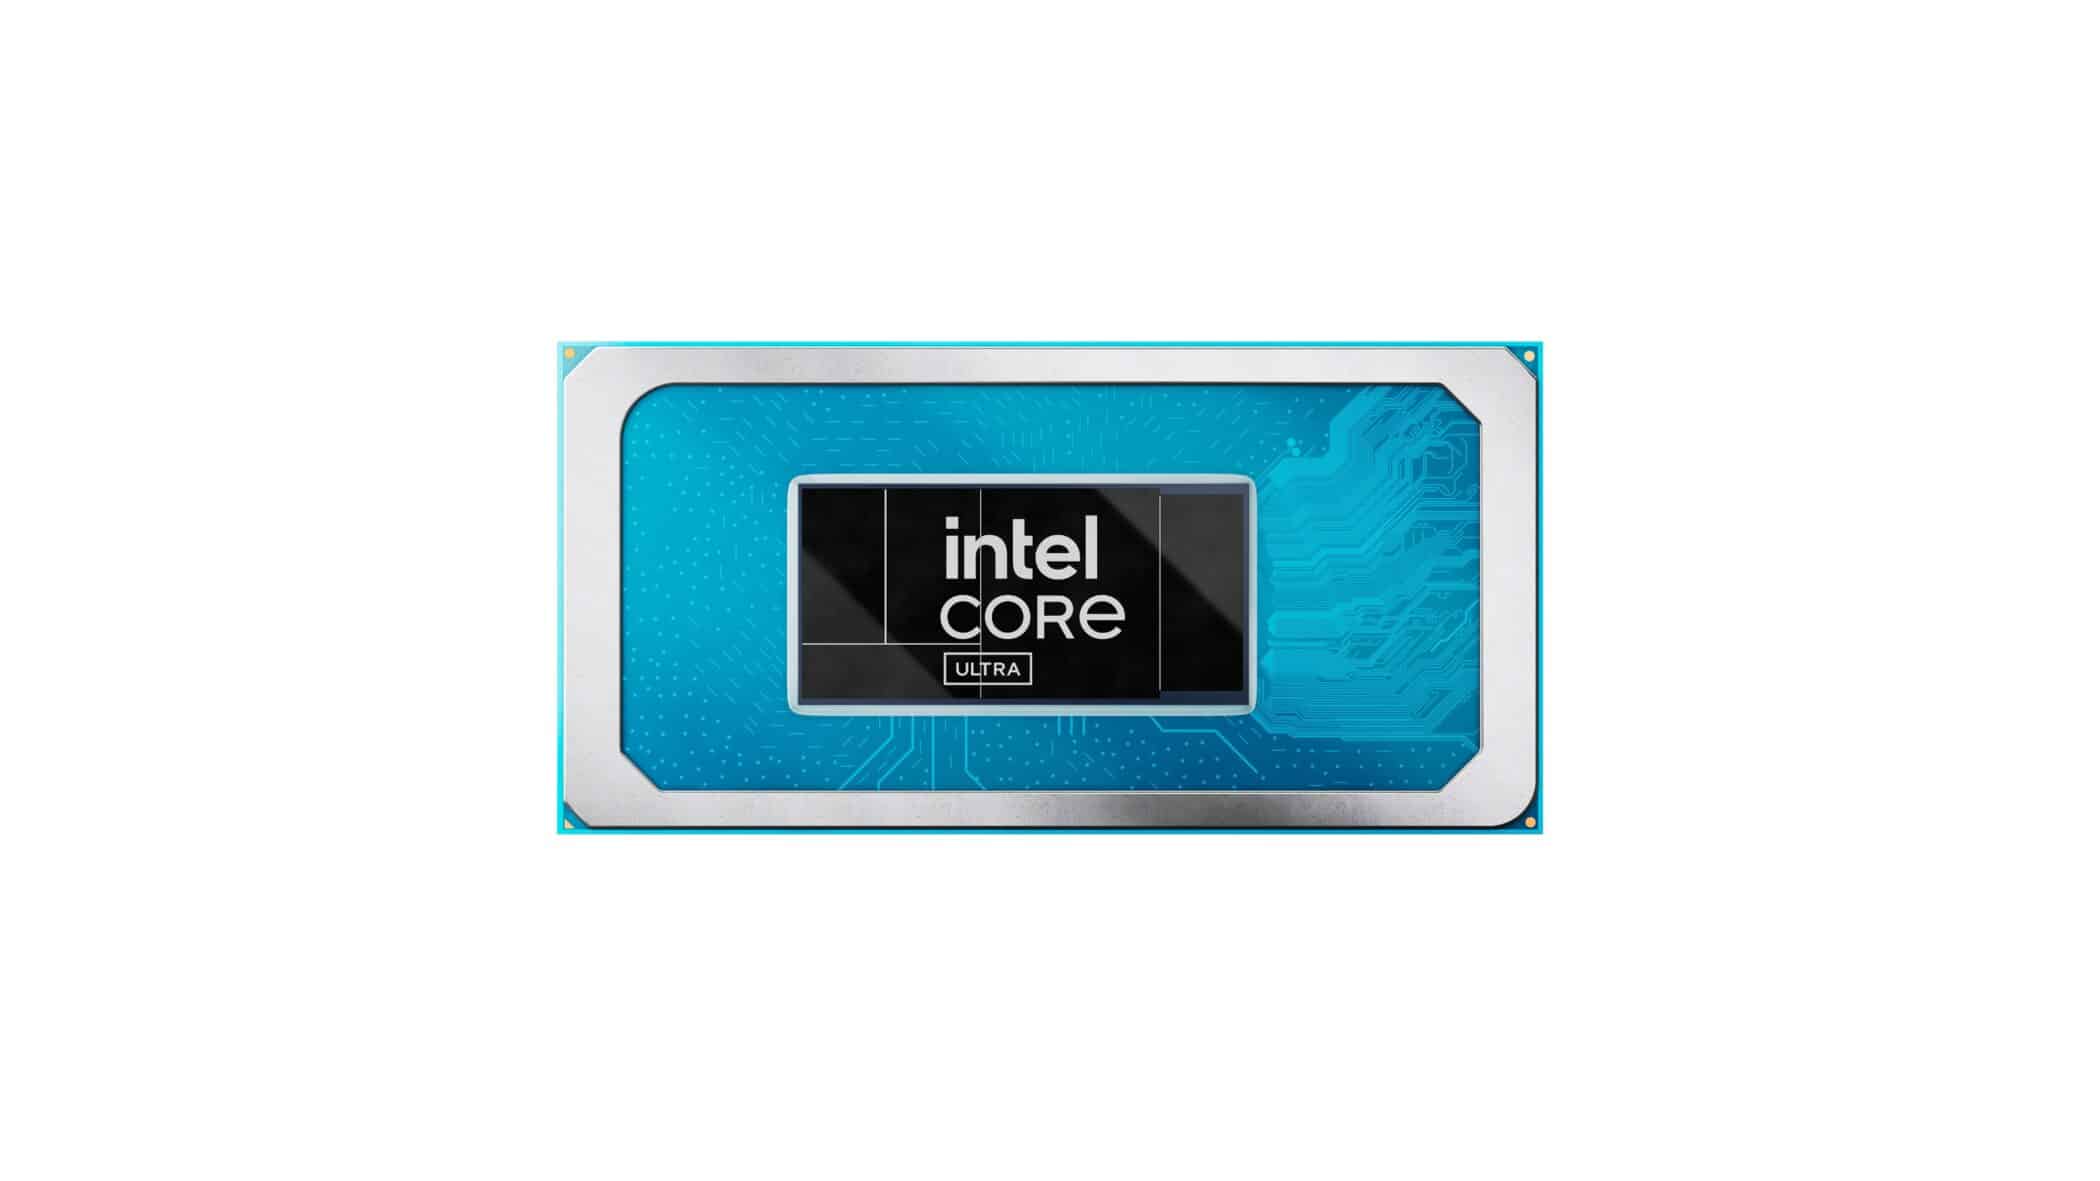 Intel Core Ultra 3